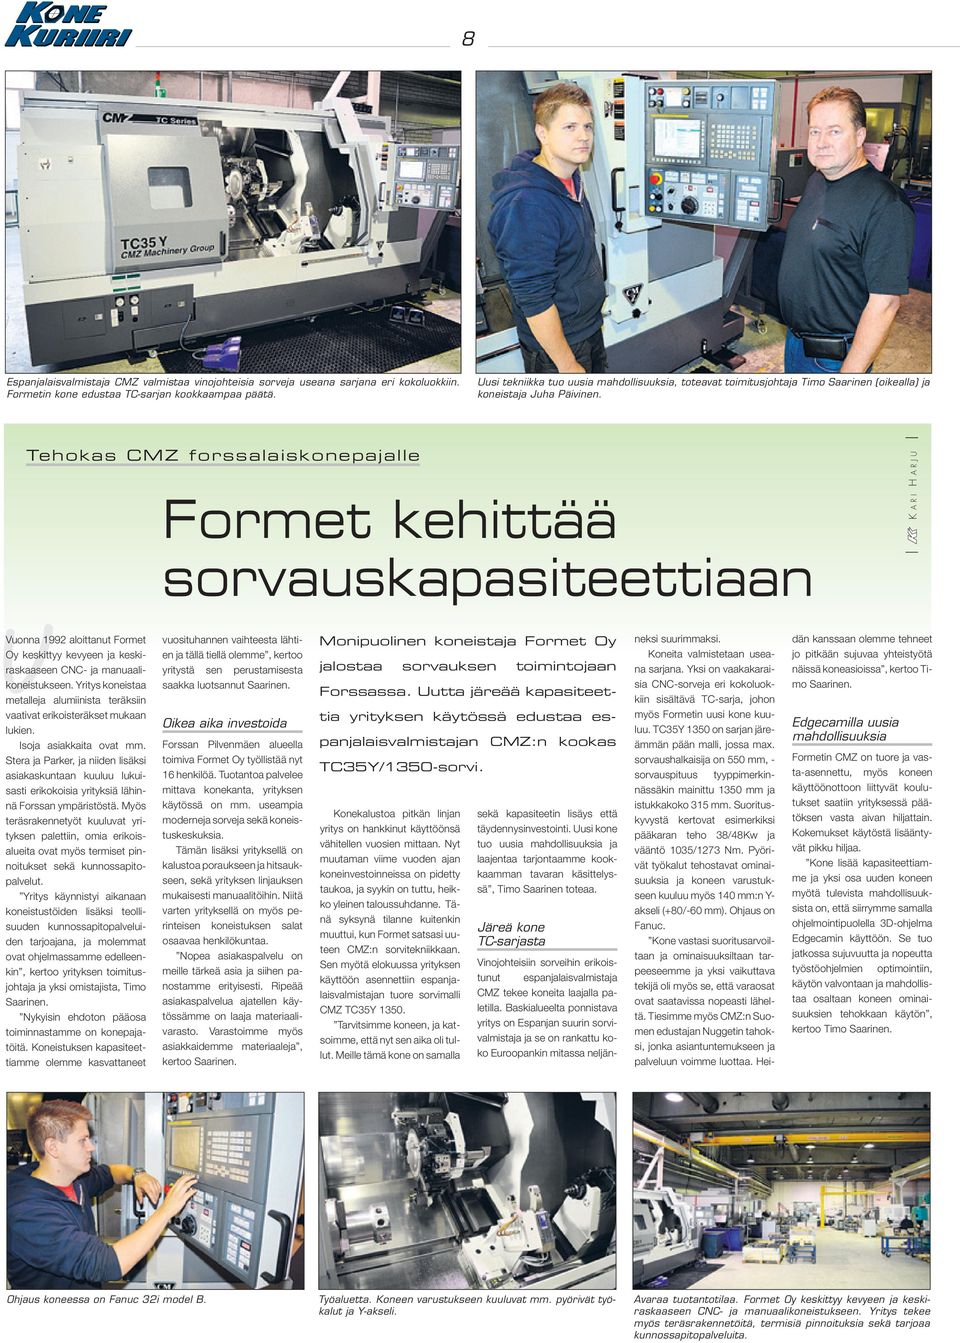 Tehokas CMZ forssalaiskonepajalle vvuonna 1992 aloittanut Formet Oy keskittyy kevyeen ja keskiraskaaseen CNC- ja manuaalikoneistukseen.